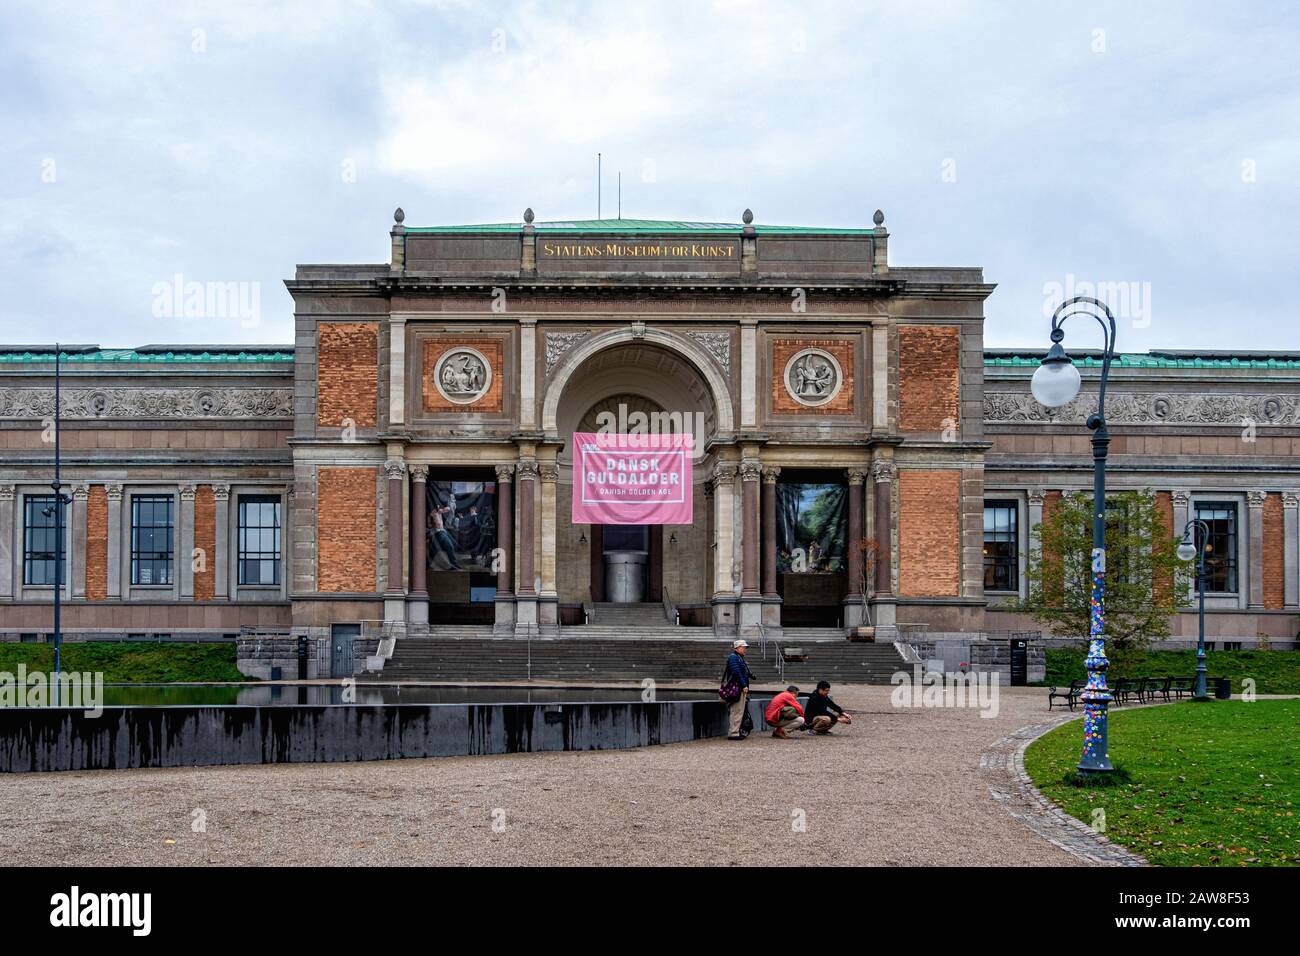 The National Gallery of Denmark, Statens Museum for Kunst, Italian Renaissance revival style building built 1889-96, Copenhagen Denmark Stock Photo